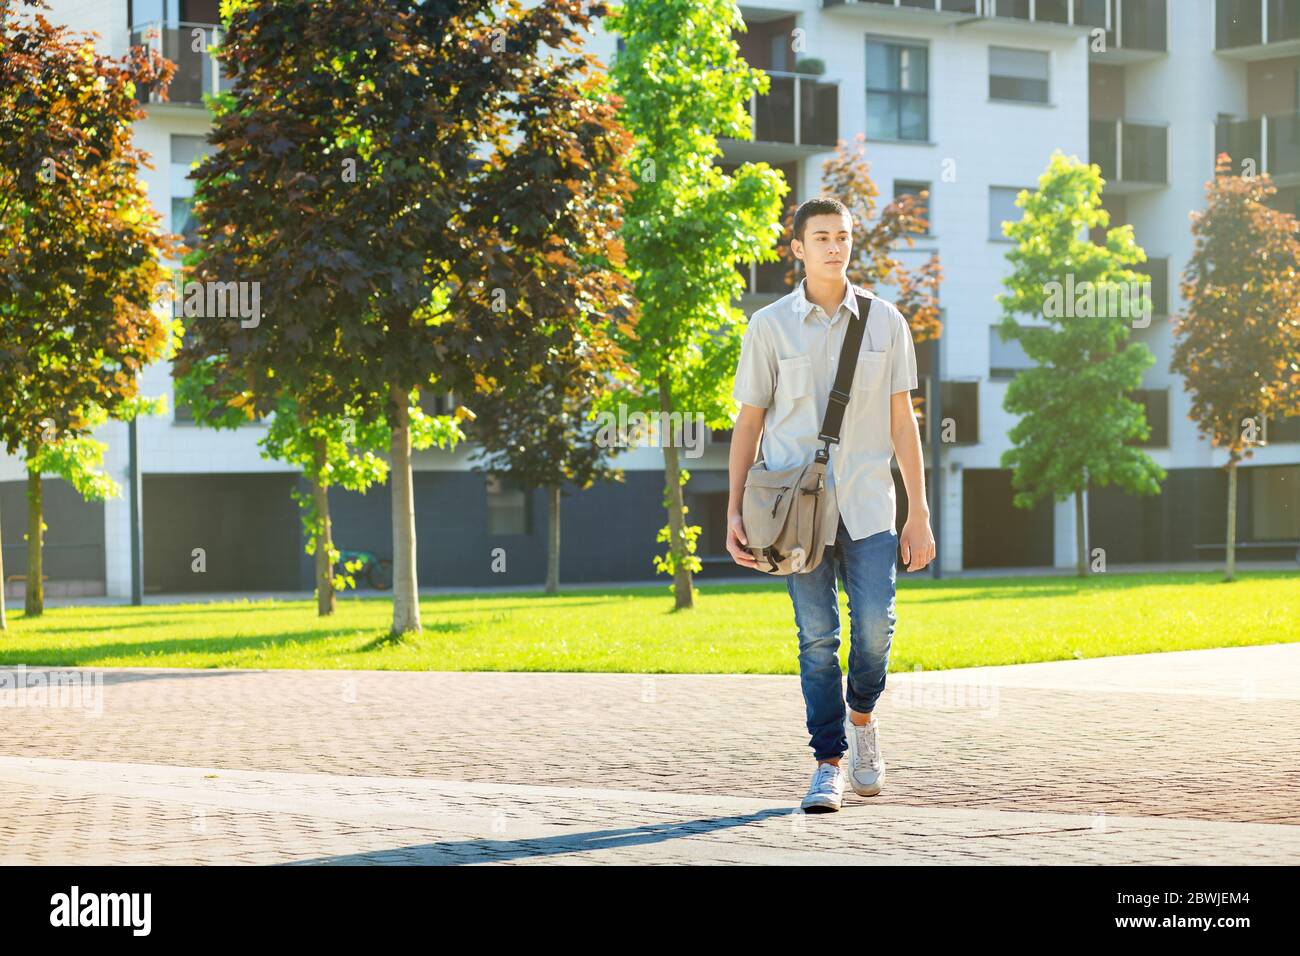 Un joven que se va a la universidad con una bolsa de libros sobre su hombro mientras camina por una calle pavimentada en un complejo urbano Foto de stock